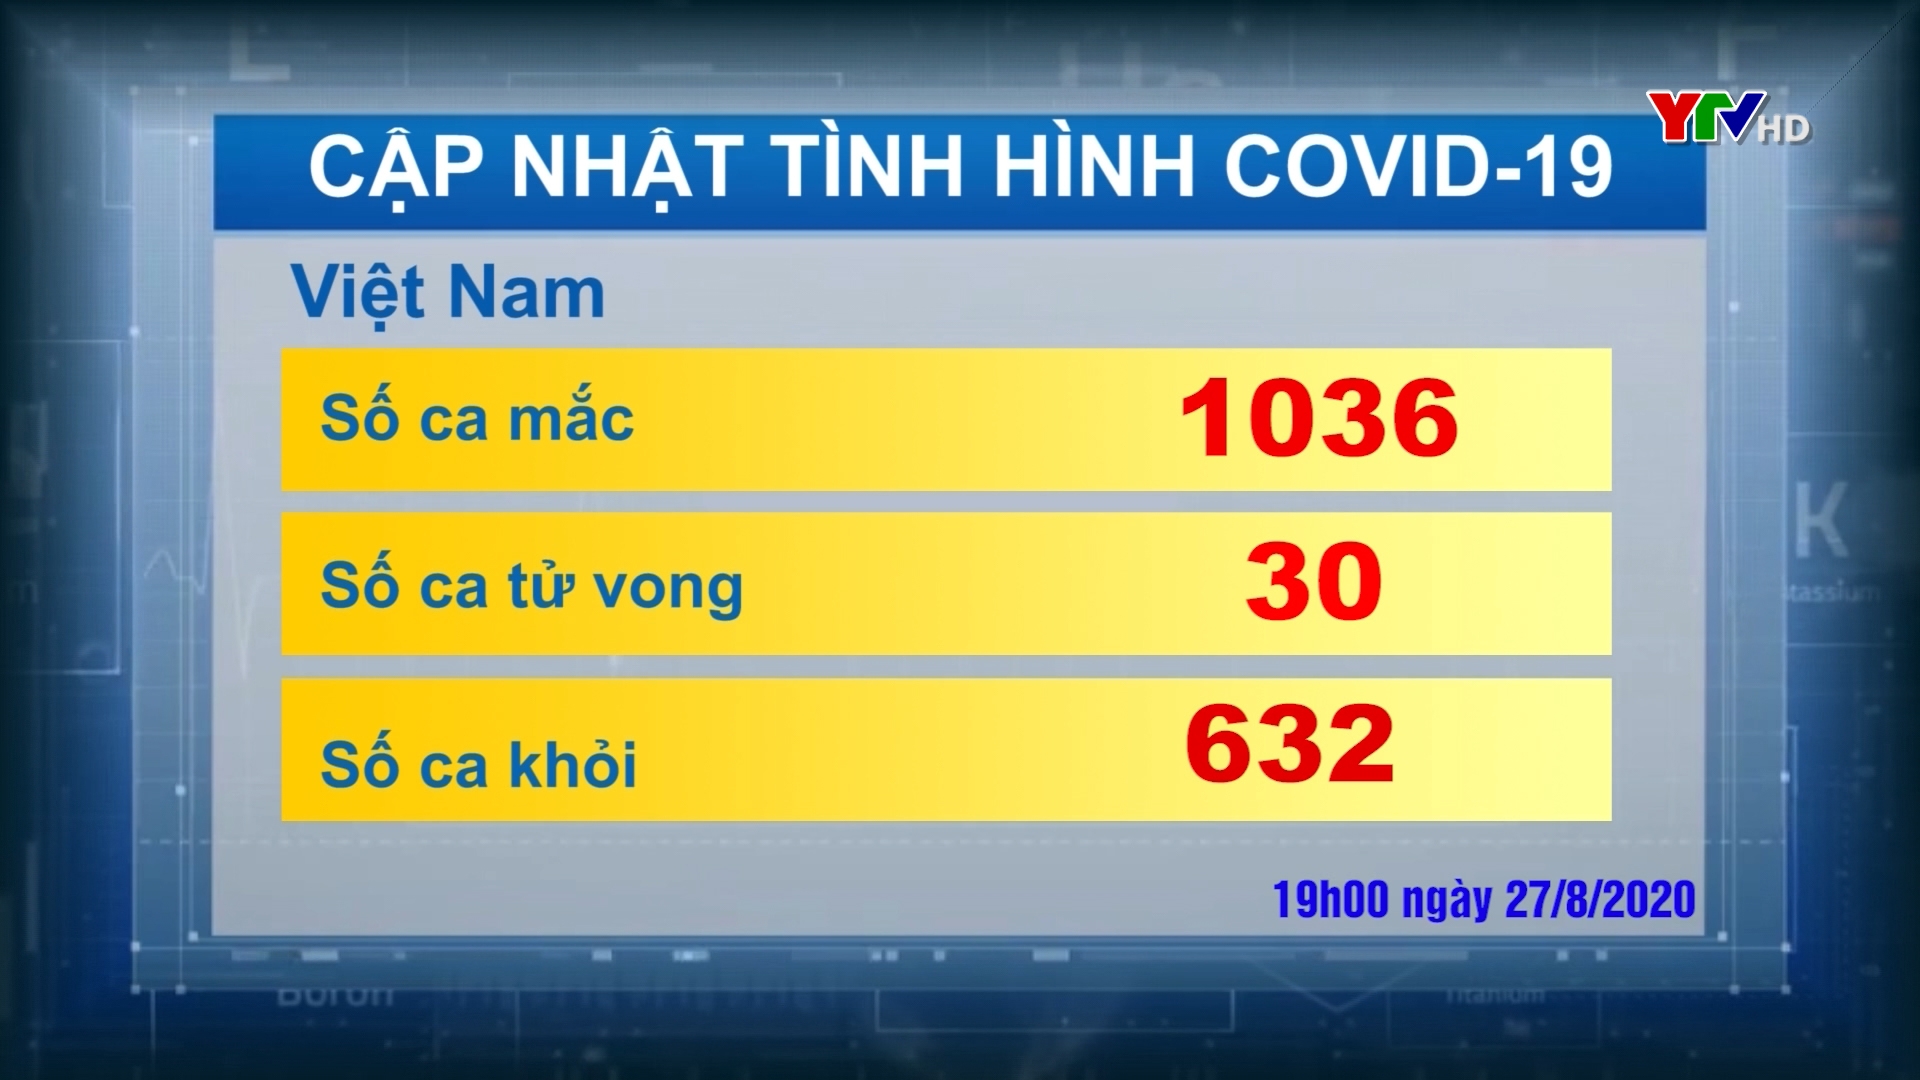 Hôm nay Việt Nam ghi nhận thêm 2 ca nhiễm COVID - 19 mới